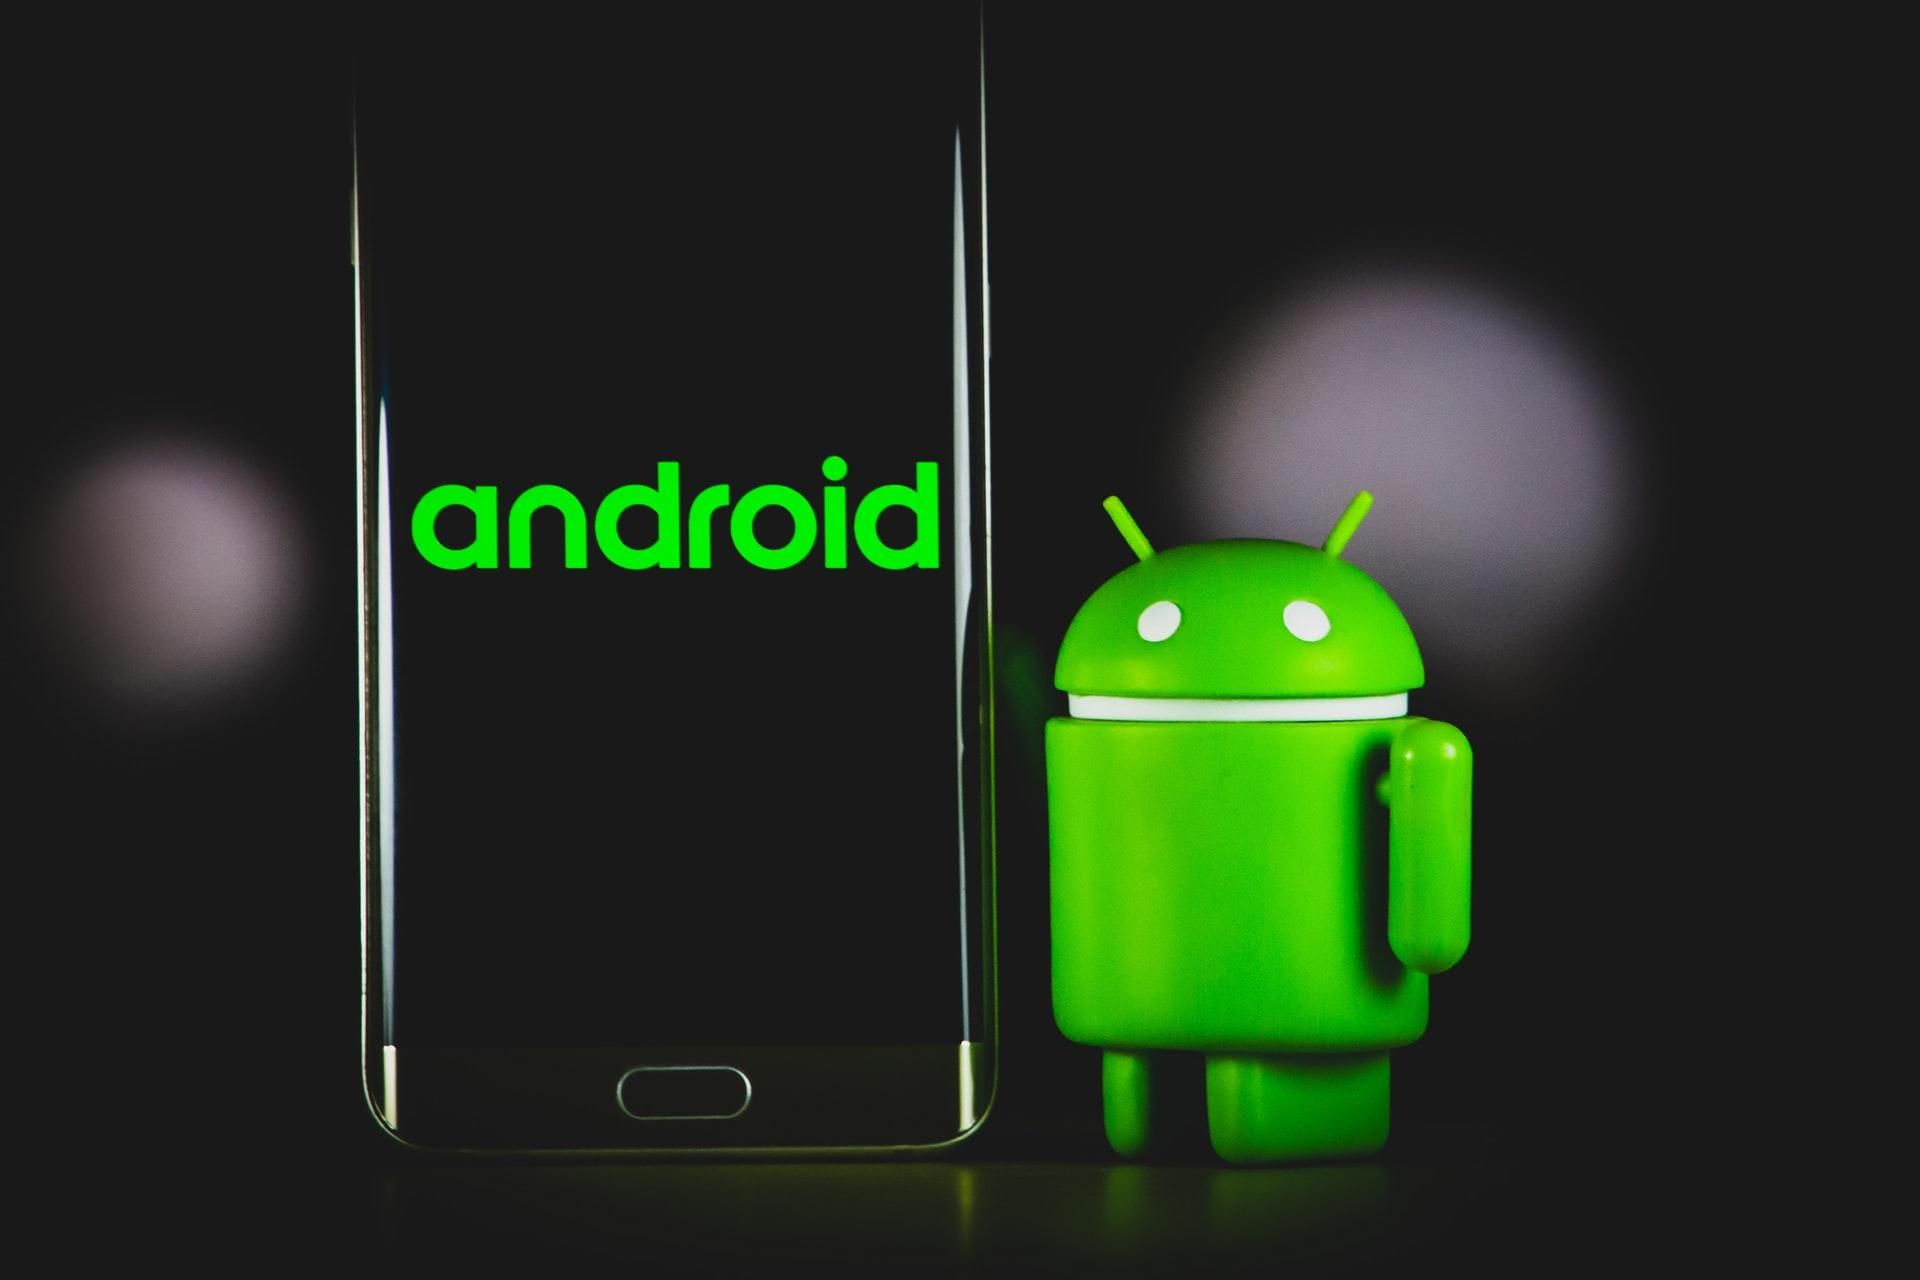 AndroidКожен додаток для Android в середньому містить 39 вразливостей